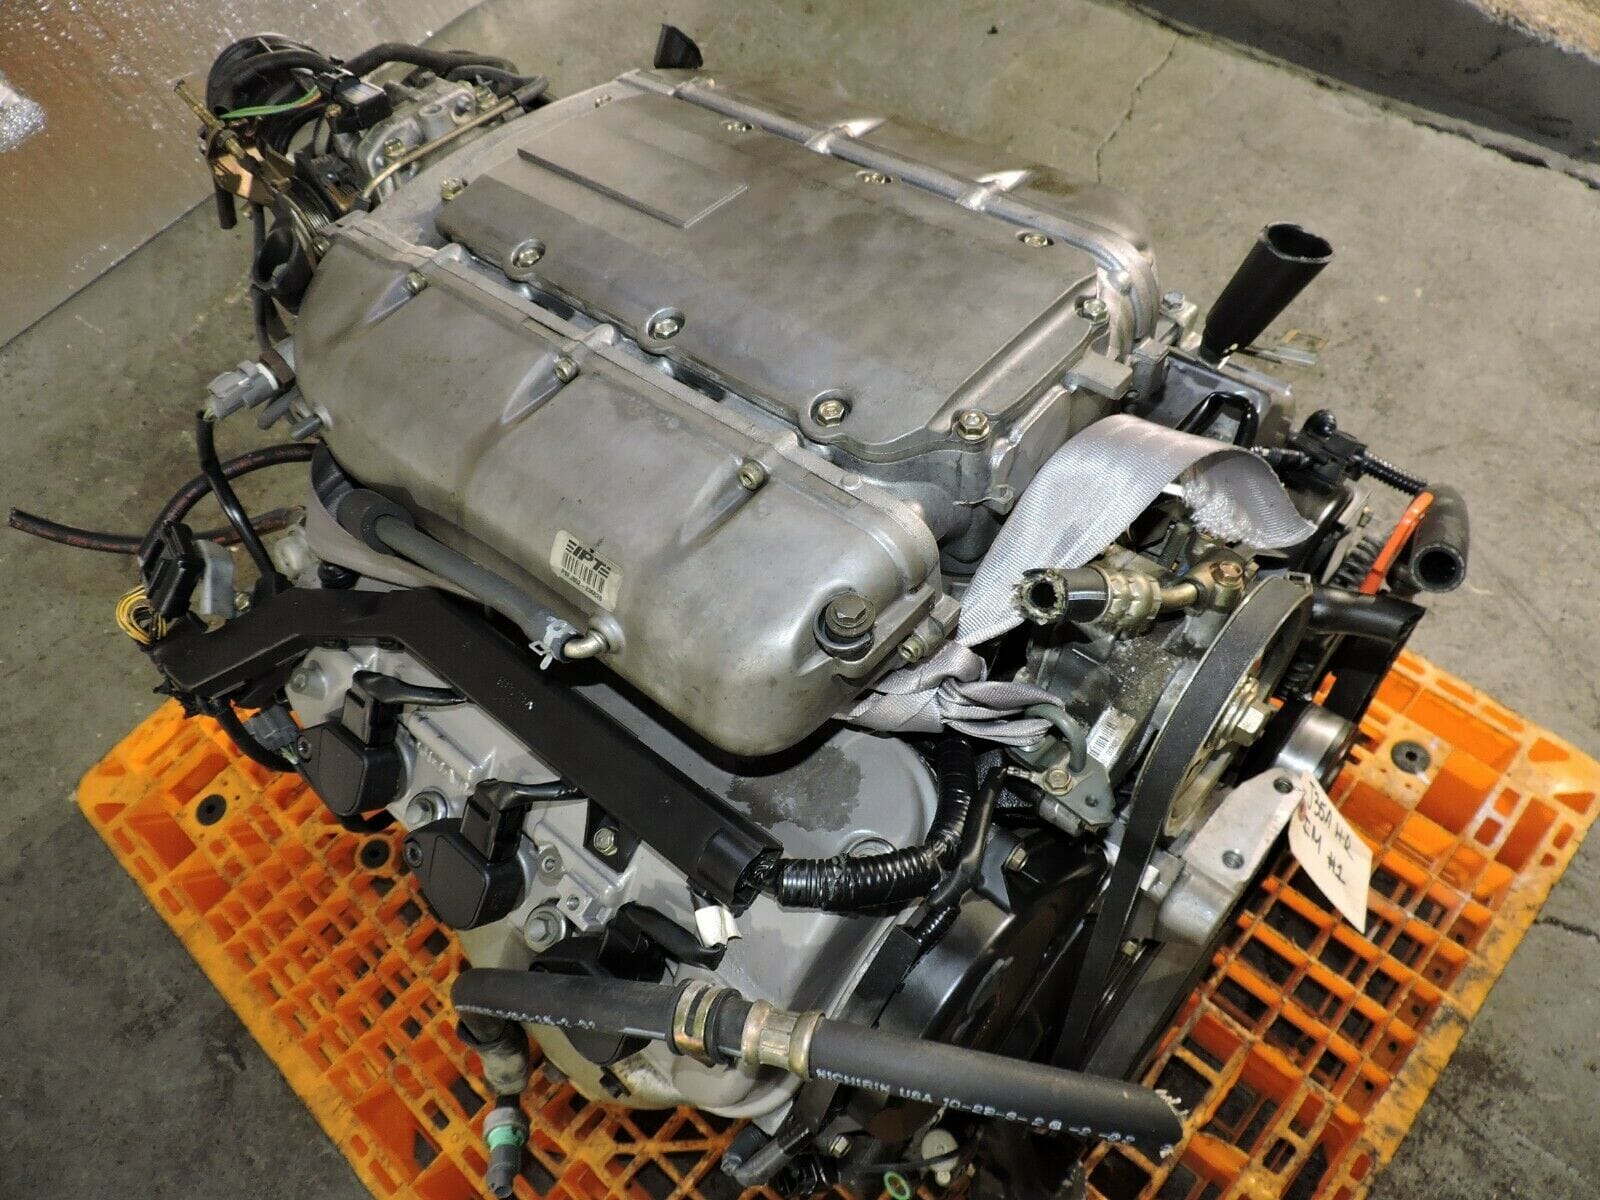 Honda Pilot 2003-2004 3.5 V6 JDM Engine - J35a